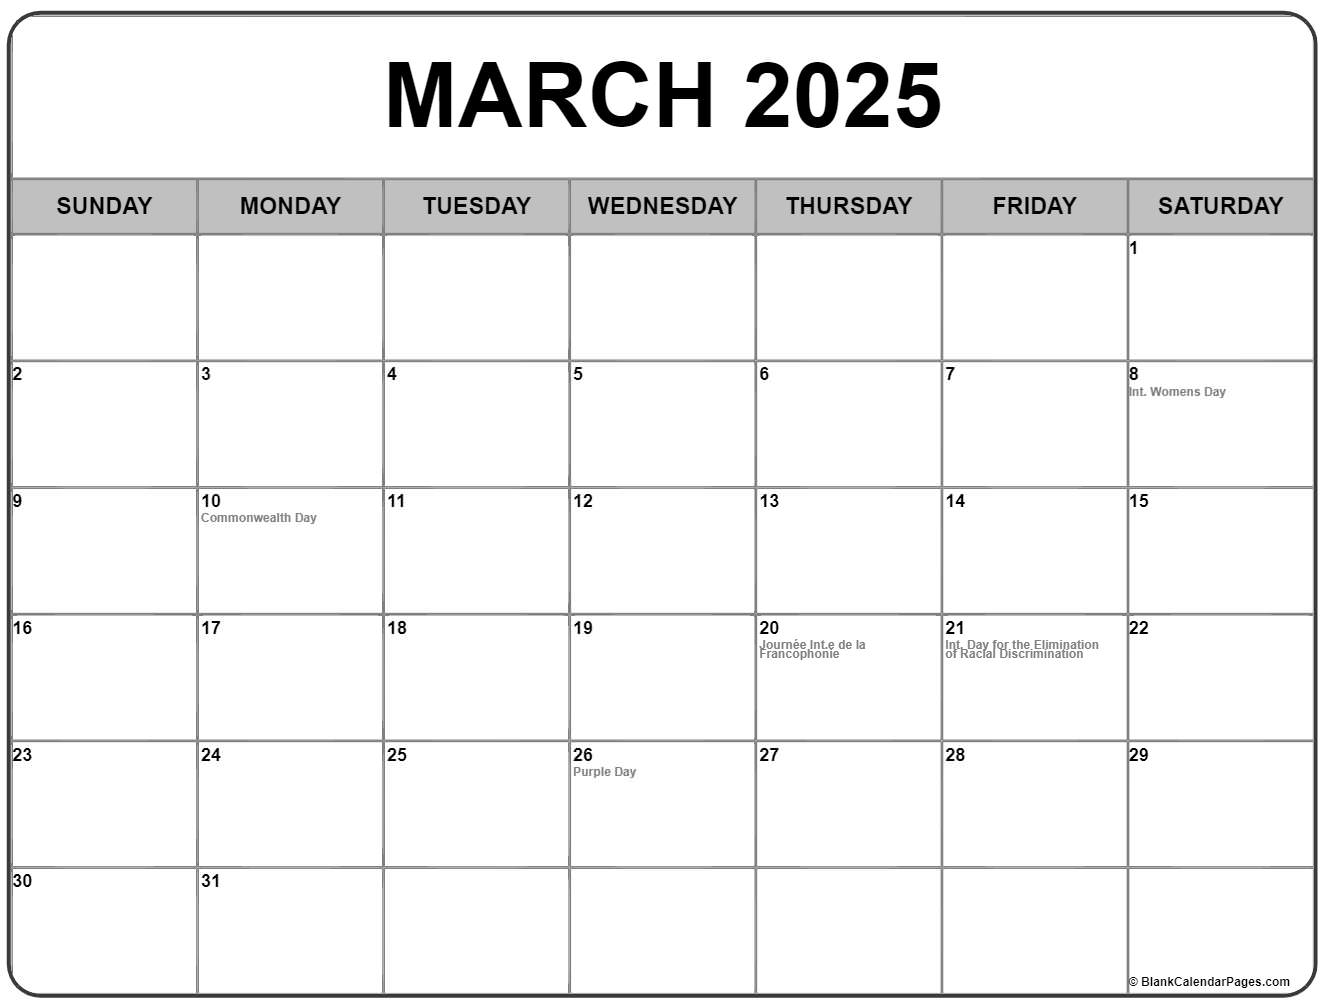 2025 Ontario Holiday Calendar 